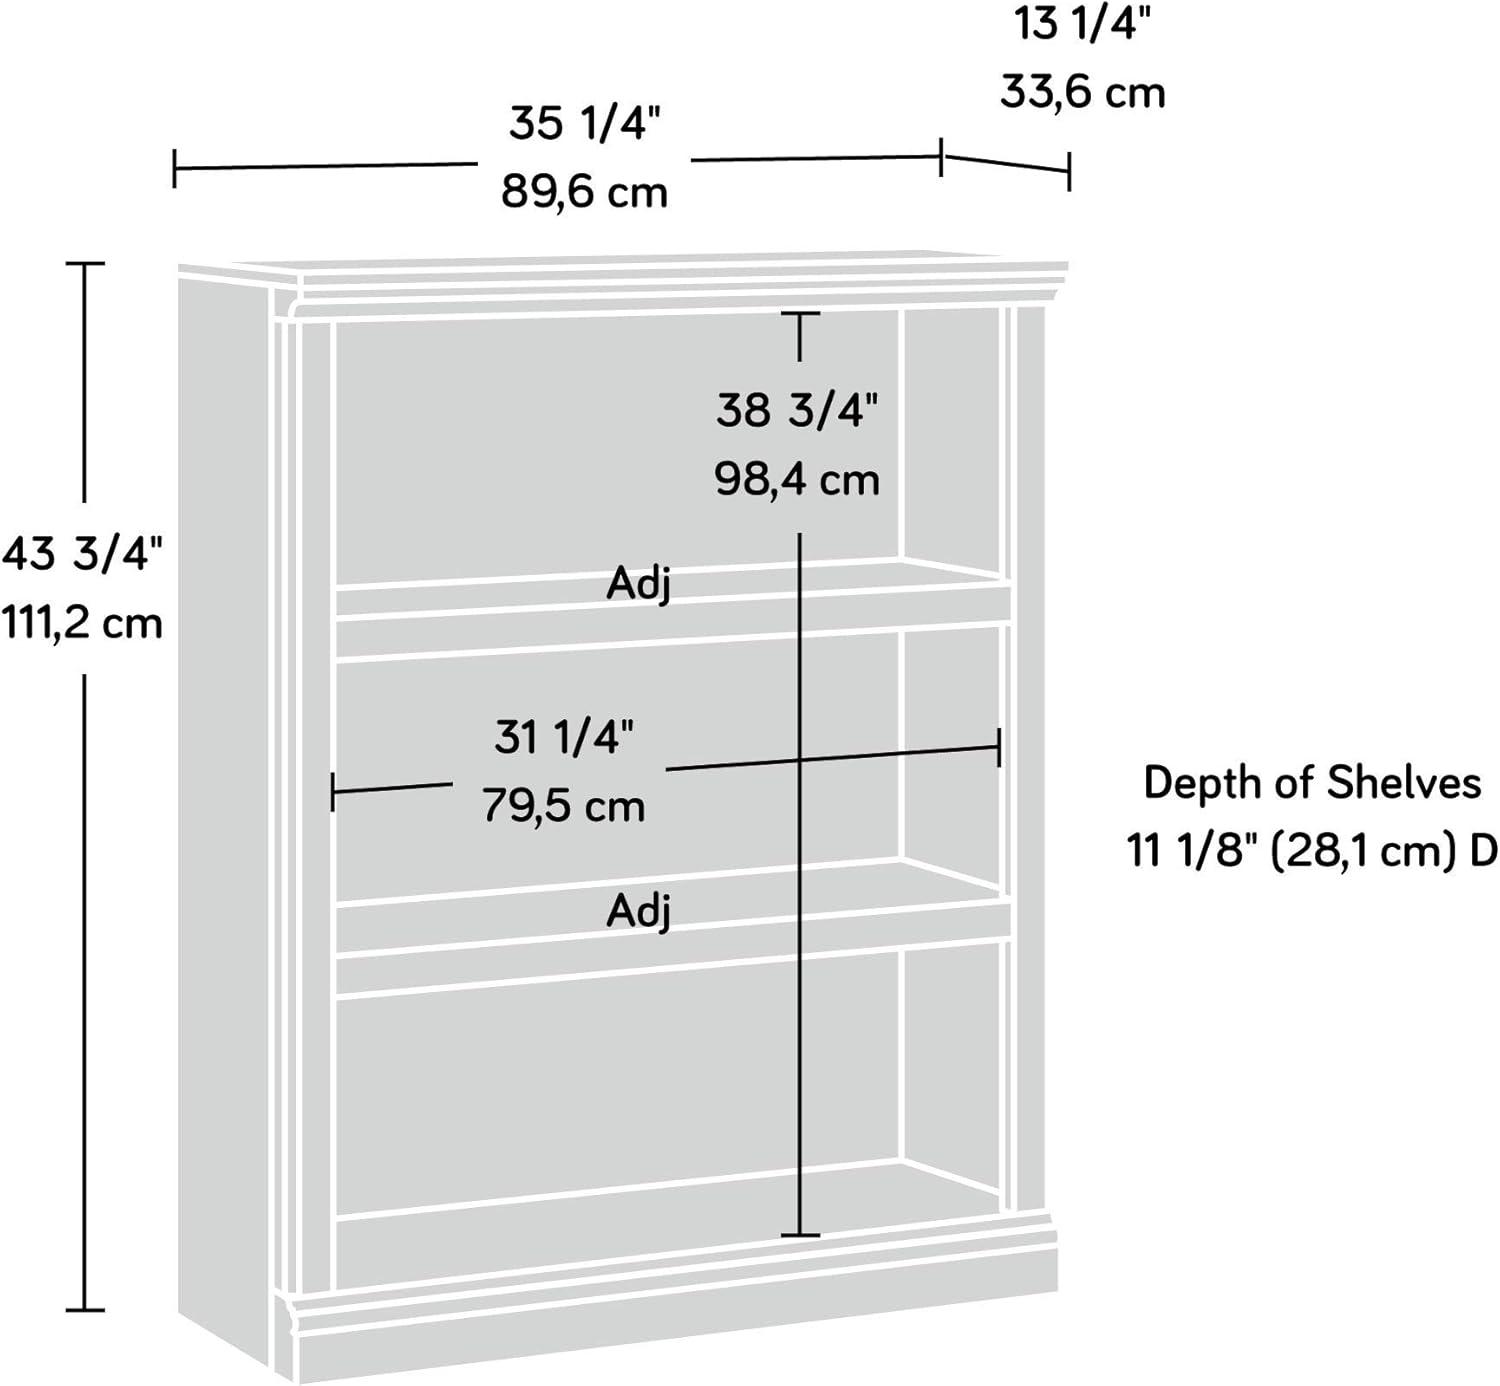 Sauder Select 3-Shelf Adjustable Washington Cherry Bookcase